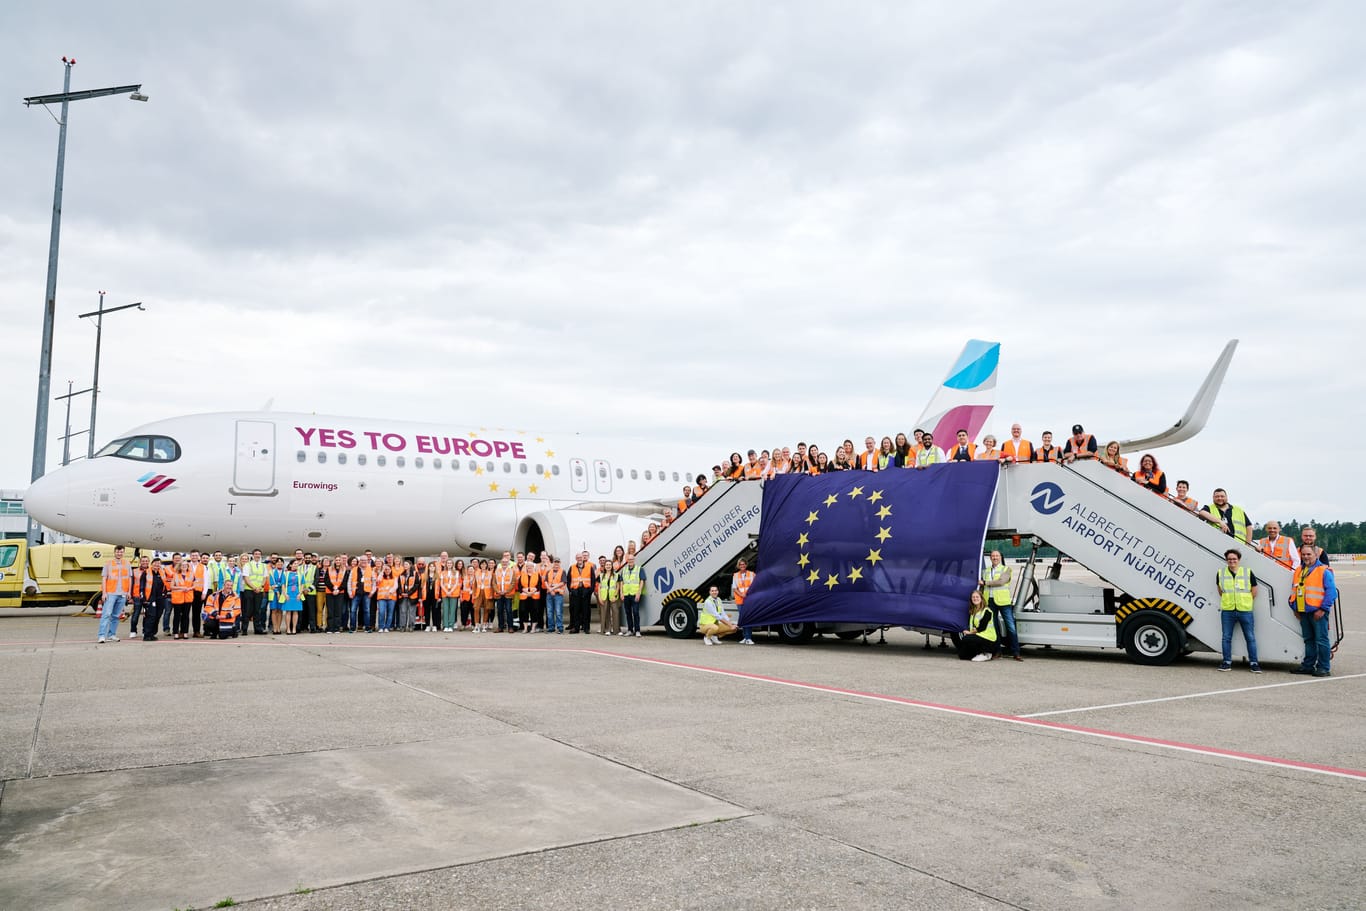 Flughafenmitarbeiter rufen gemeinsam mit Kollegen von Eurowings zum Wählen gehen auf: Ein freies, demokratisches Europa sei auch für das Geschäft wichtig.